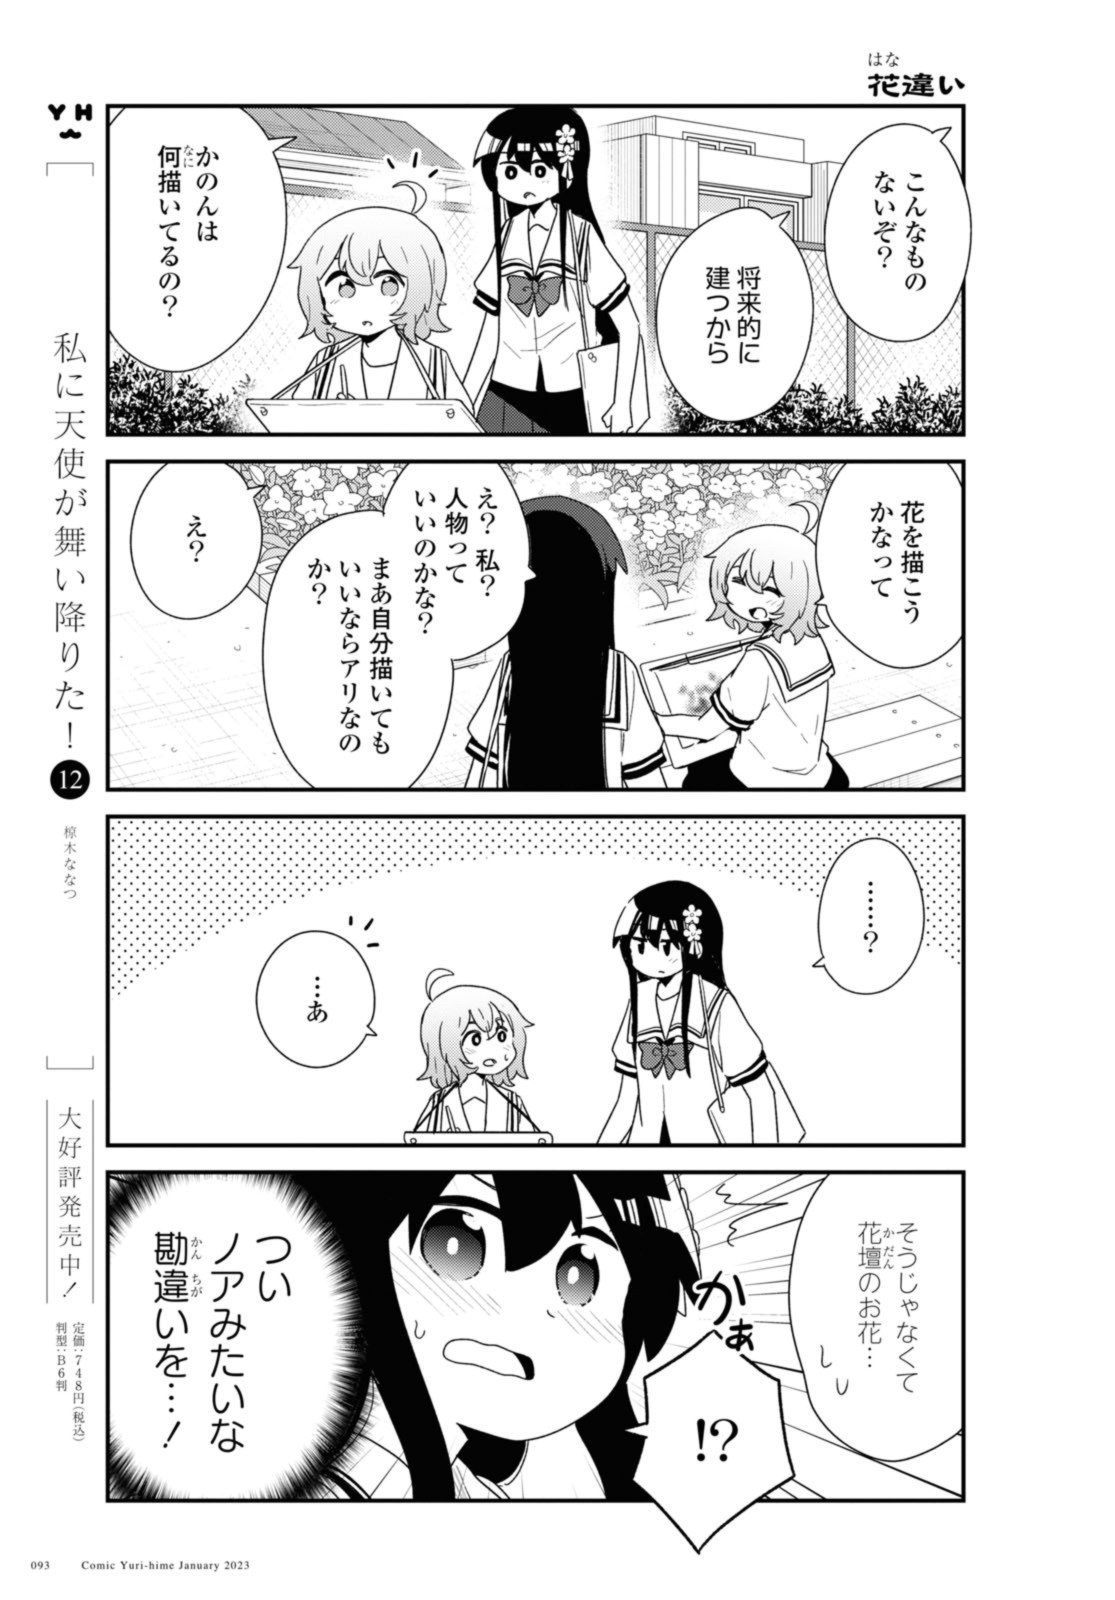 Watashi ni Tenshi ga Maiorita! - Chapter 101 - Page 5